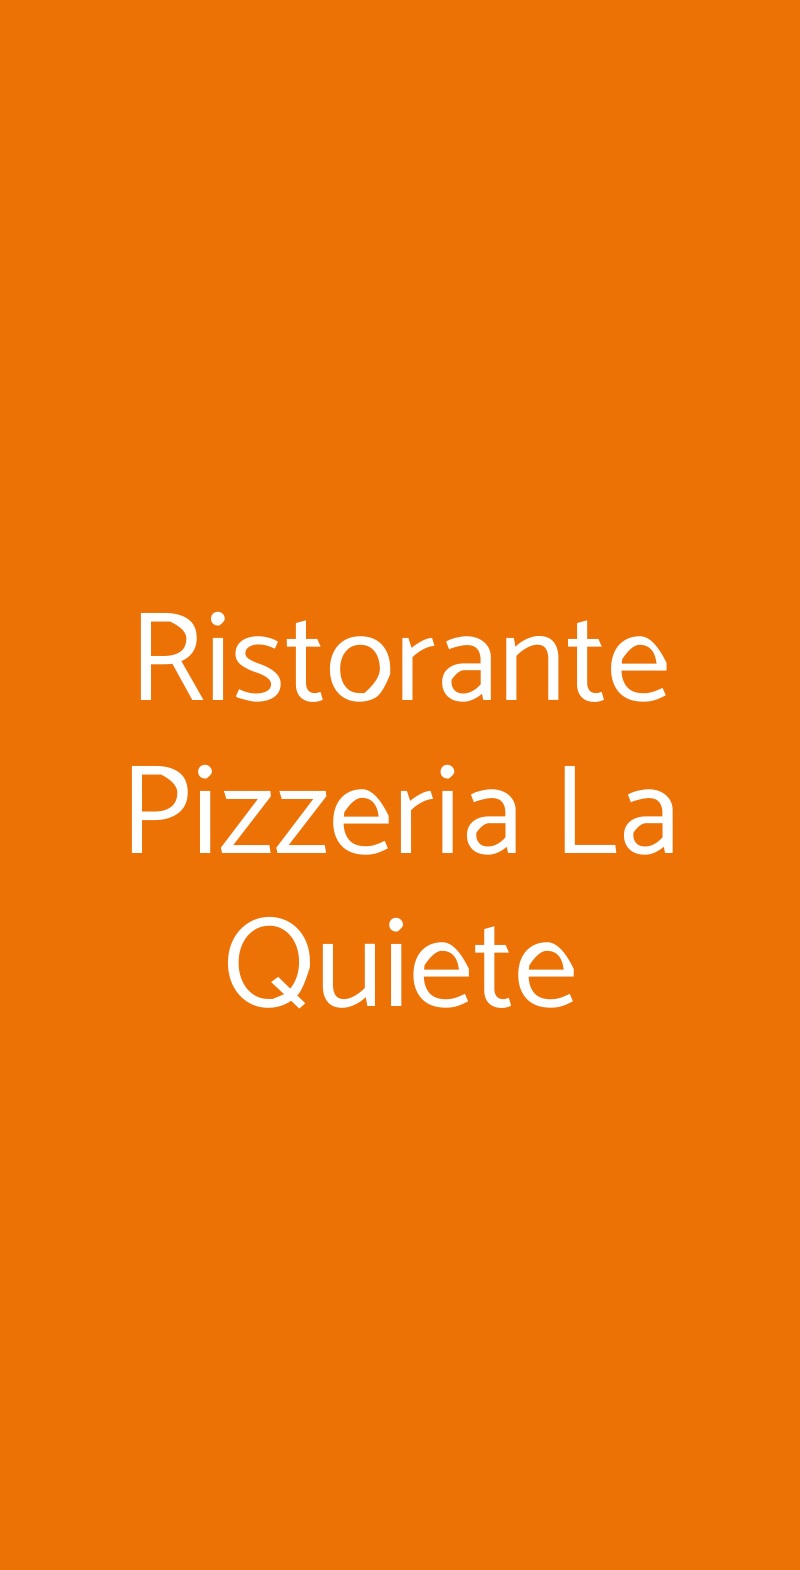 Ristorante Pizzeria La Quiete Puegnago sul Garda menù 1 pagina